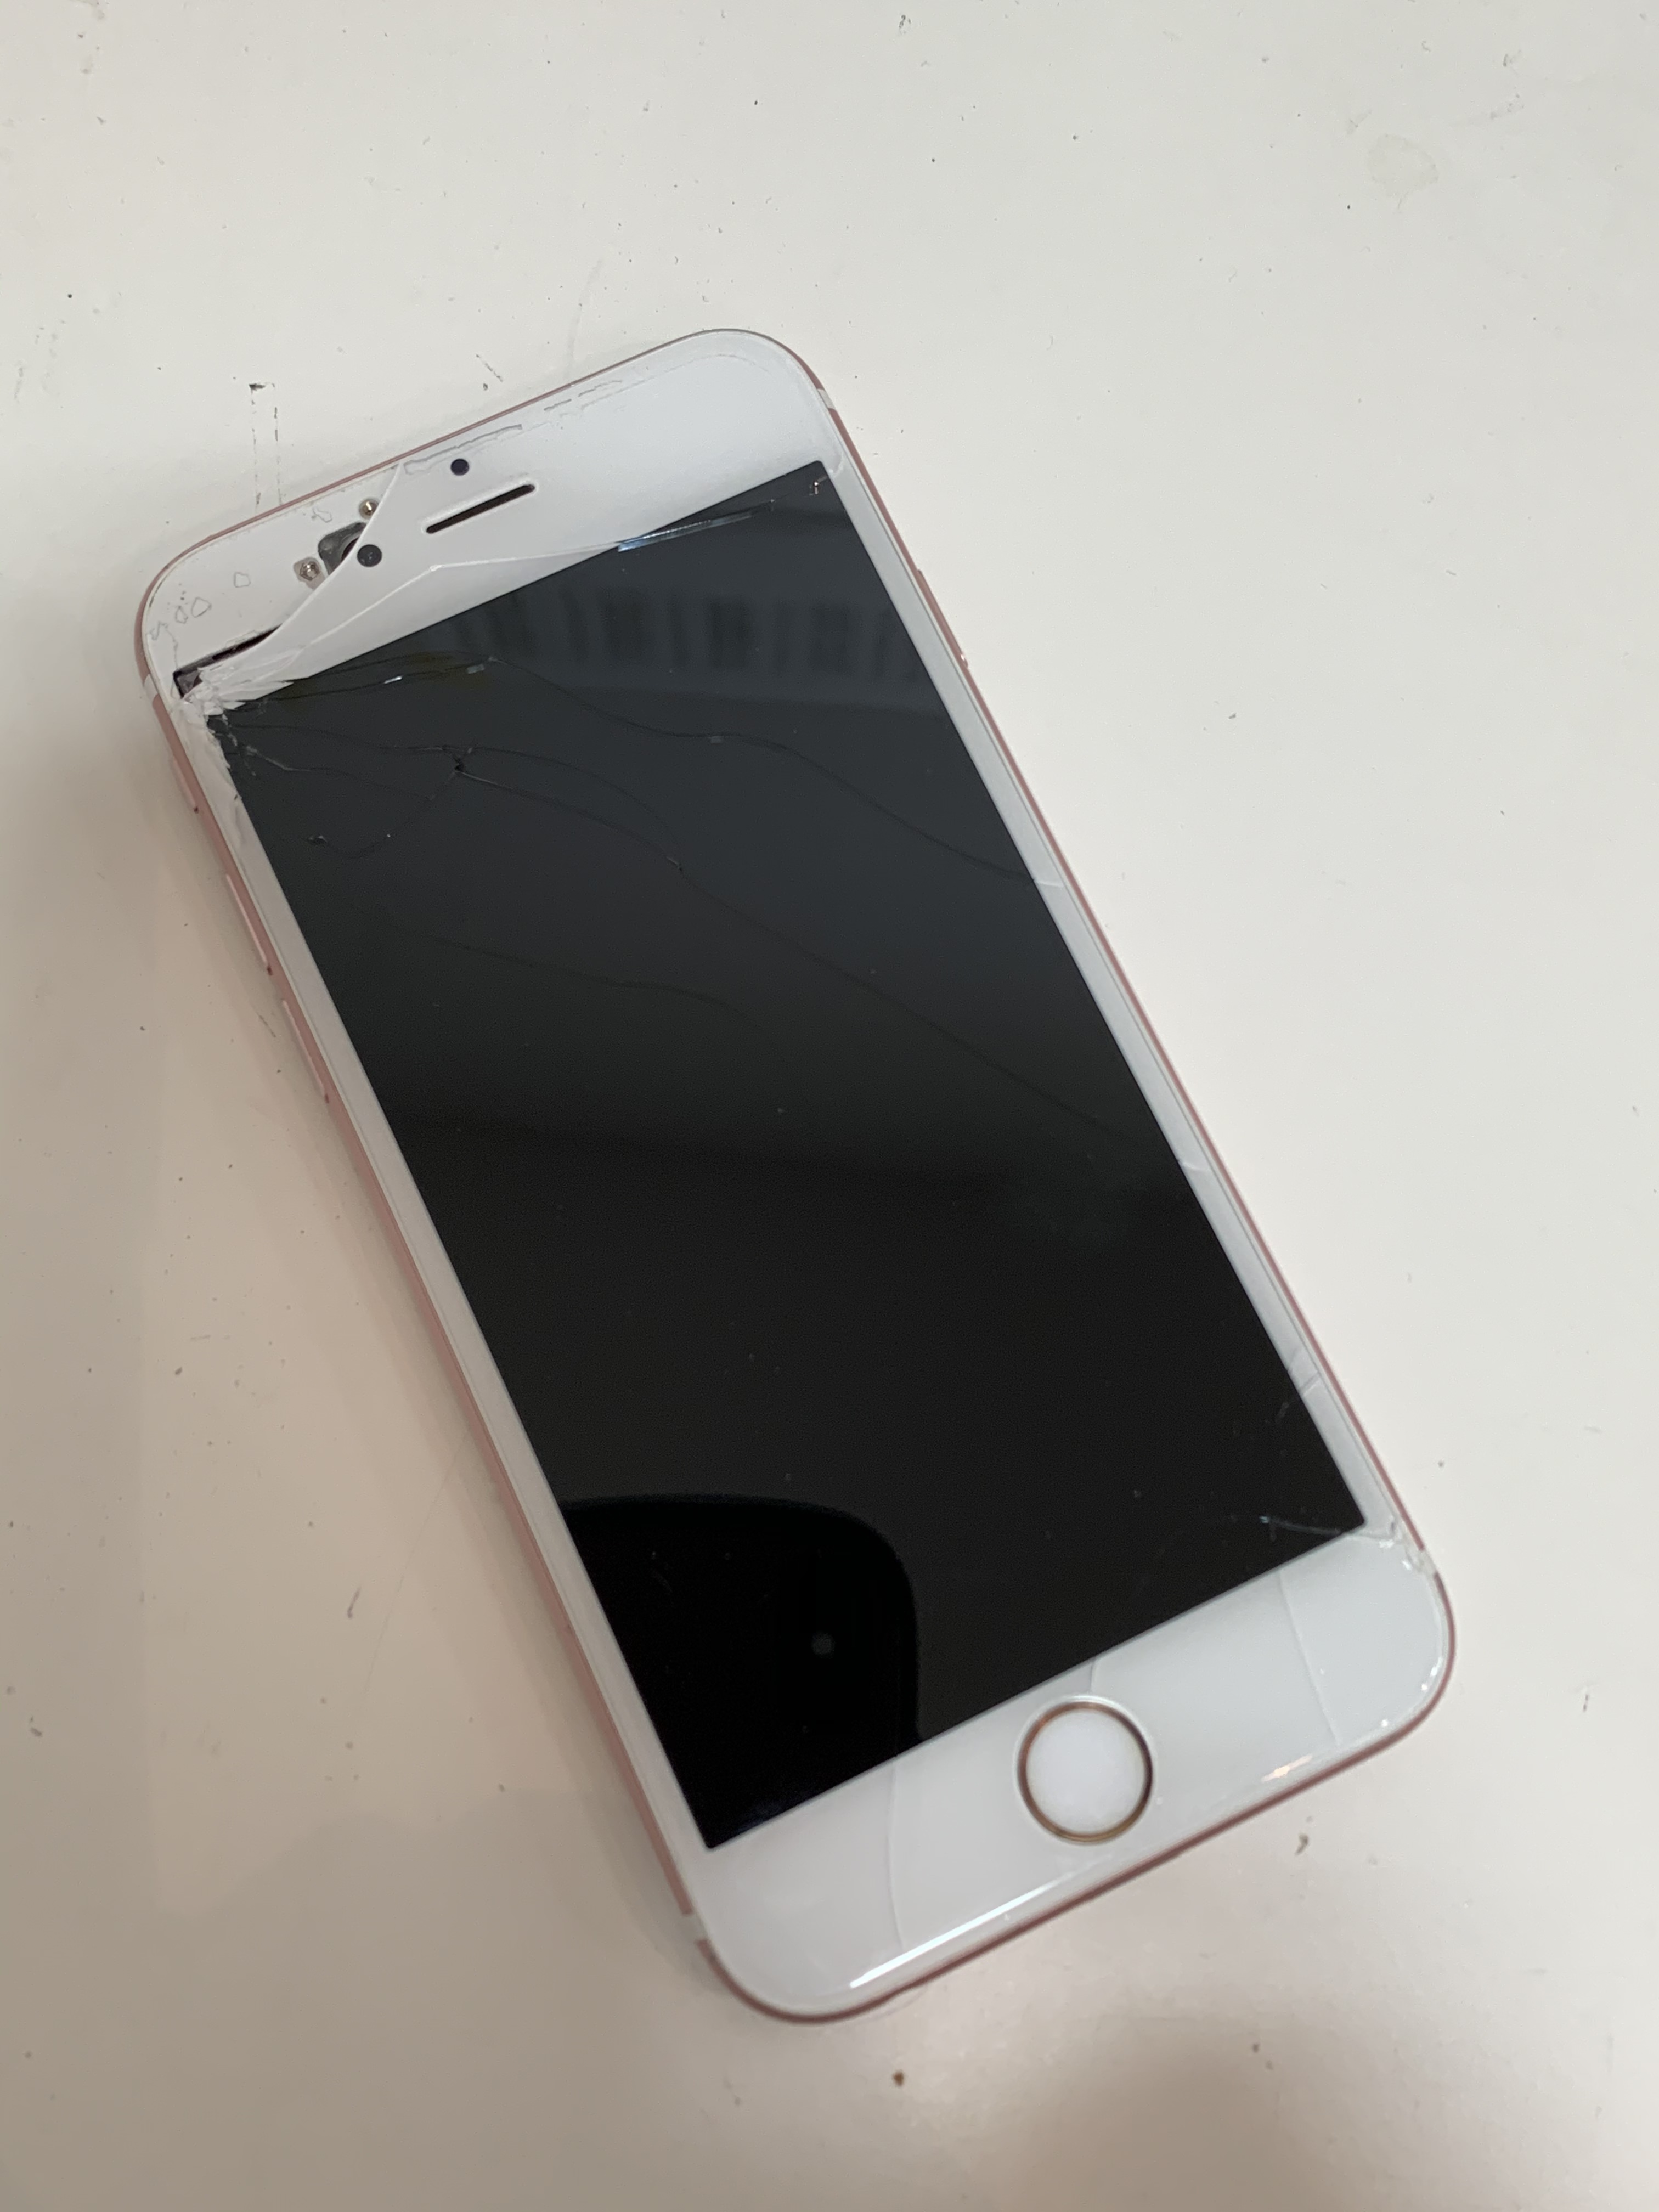 iPhone6sの画面が割れて内部がむき出し…そのまま放置するとどんな危険